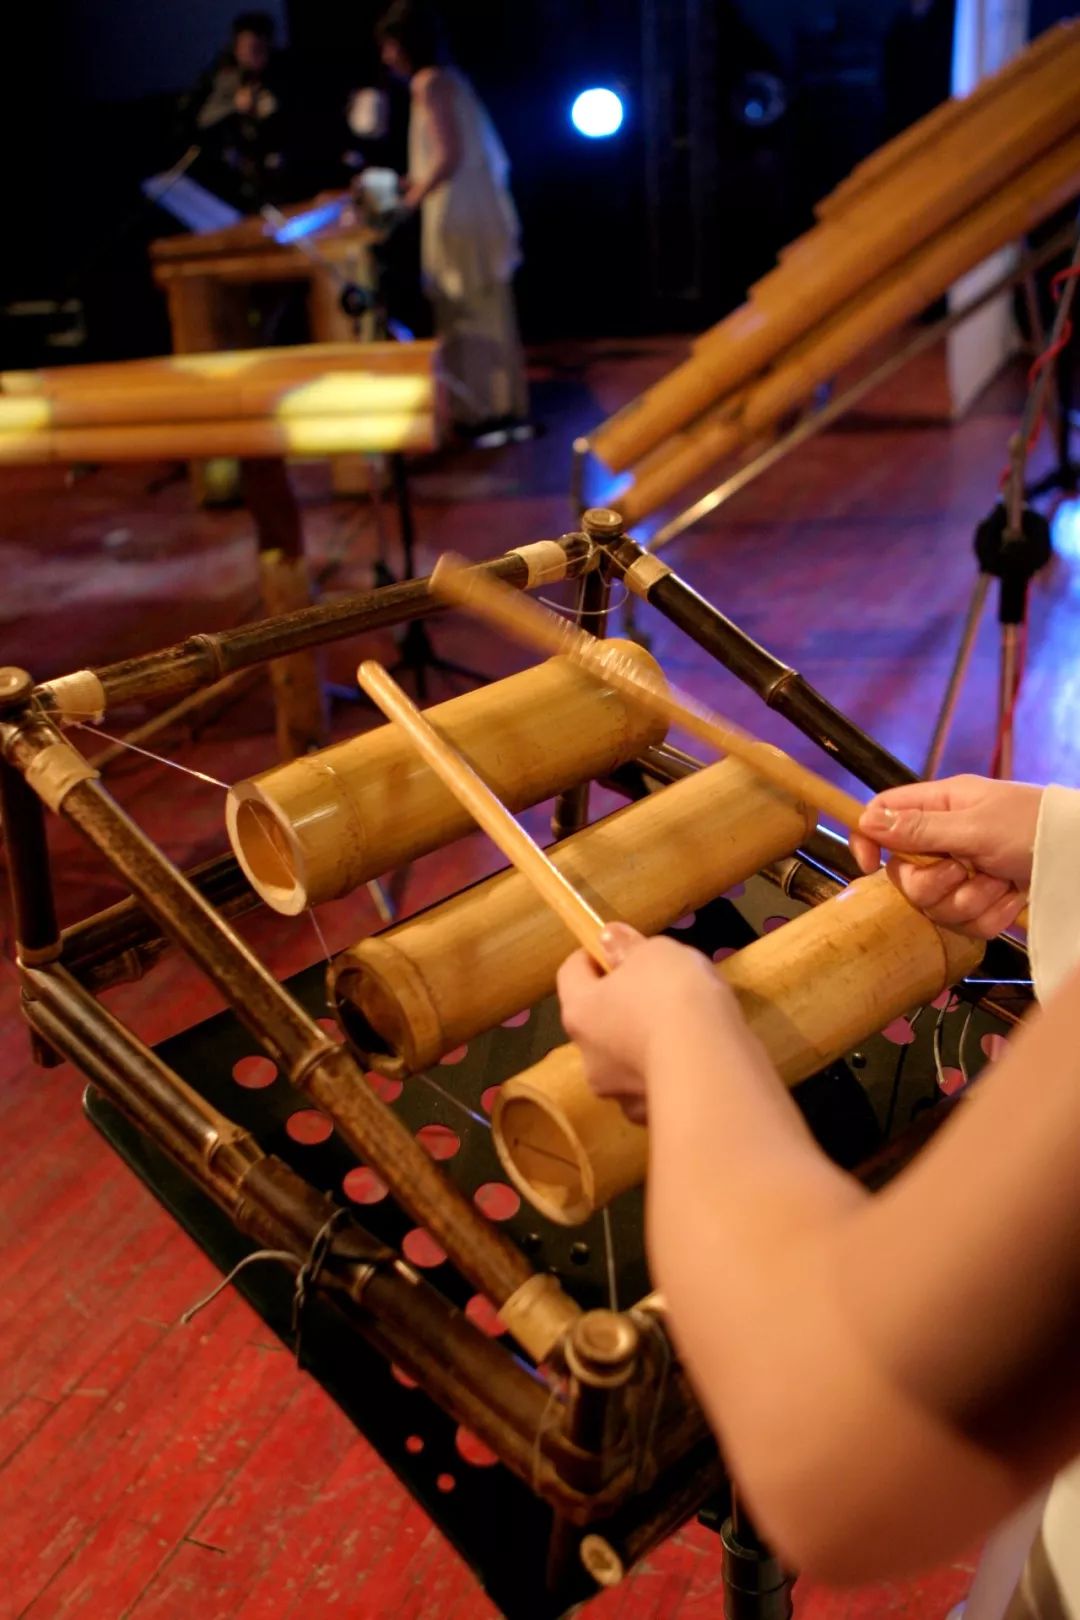 传统竹管乐器图片